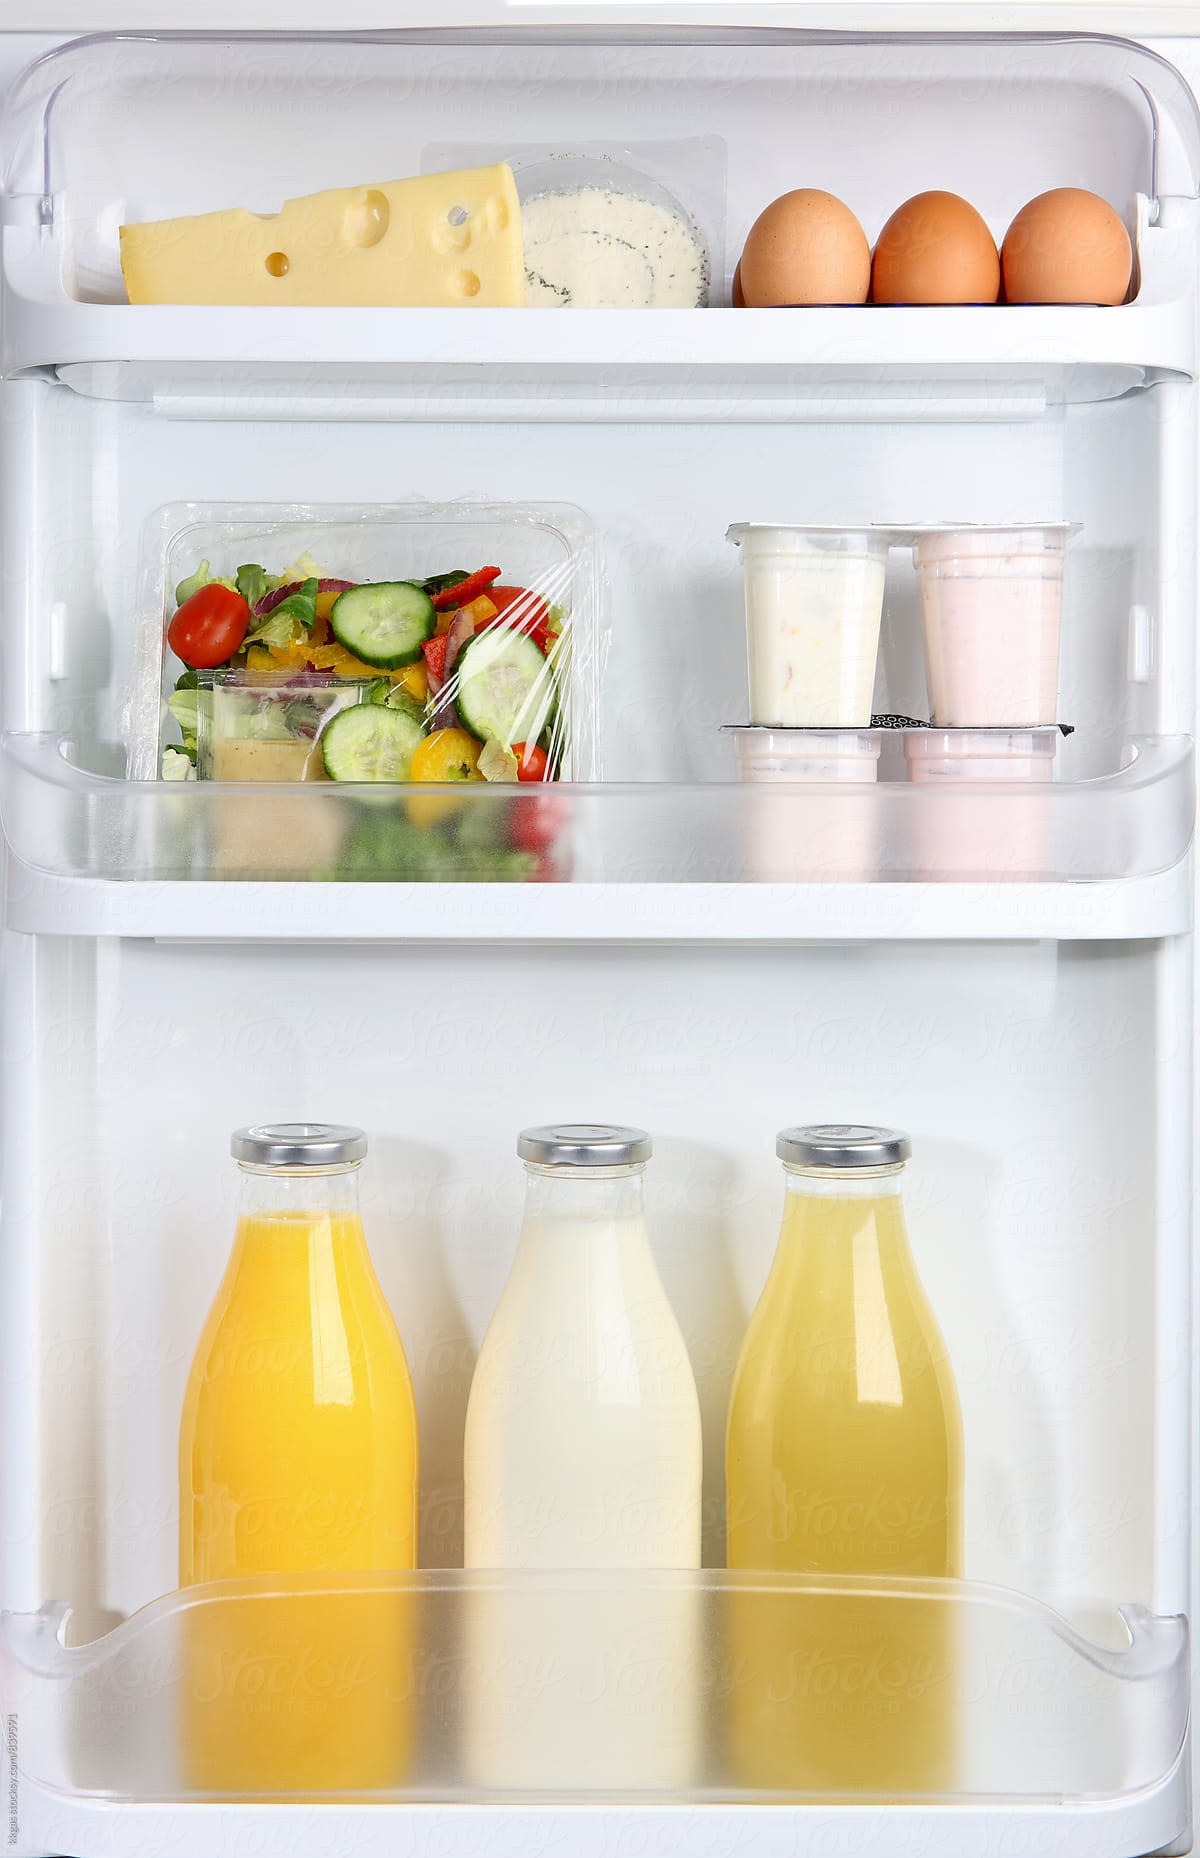 Refrigrator door with milk juice eggs